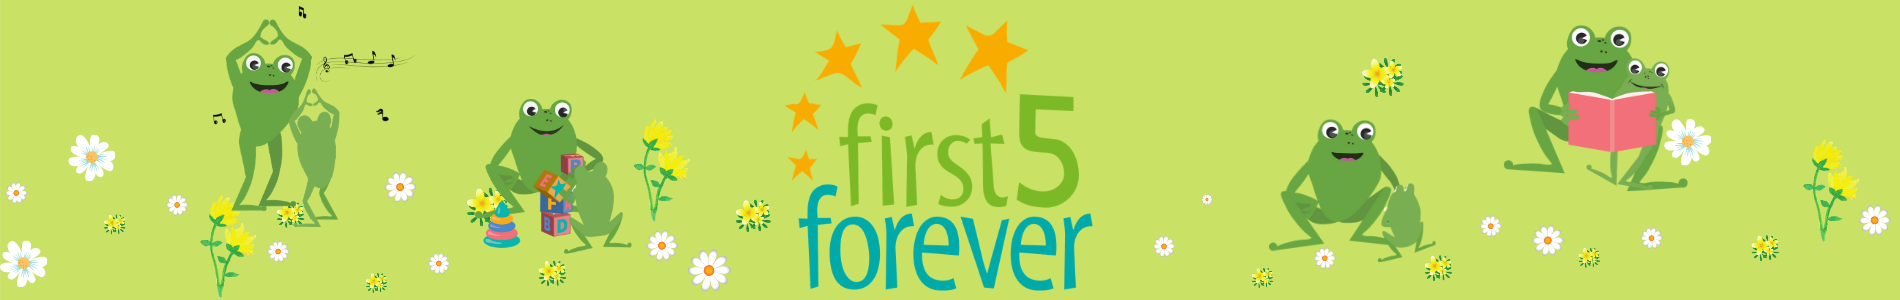 First 5 Forever website banner image